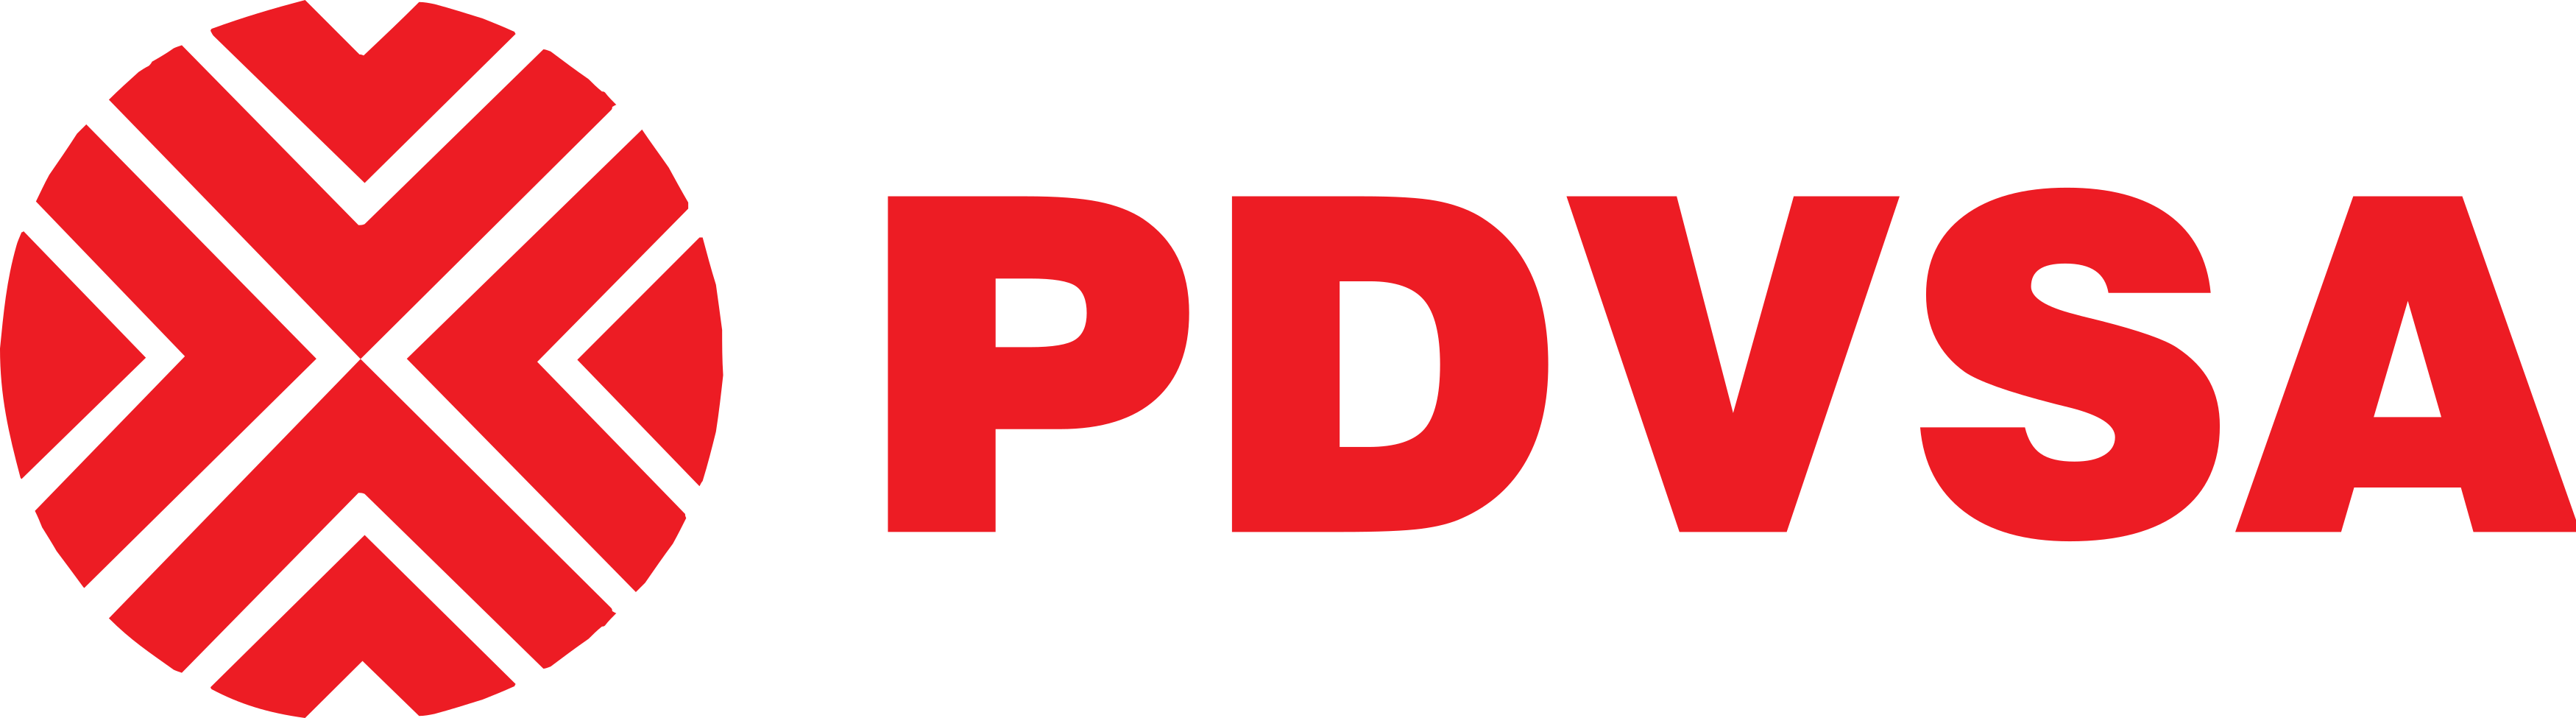 pdvsa logo - PDVSA Logo